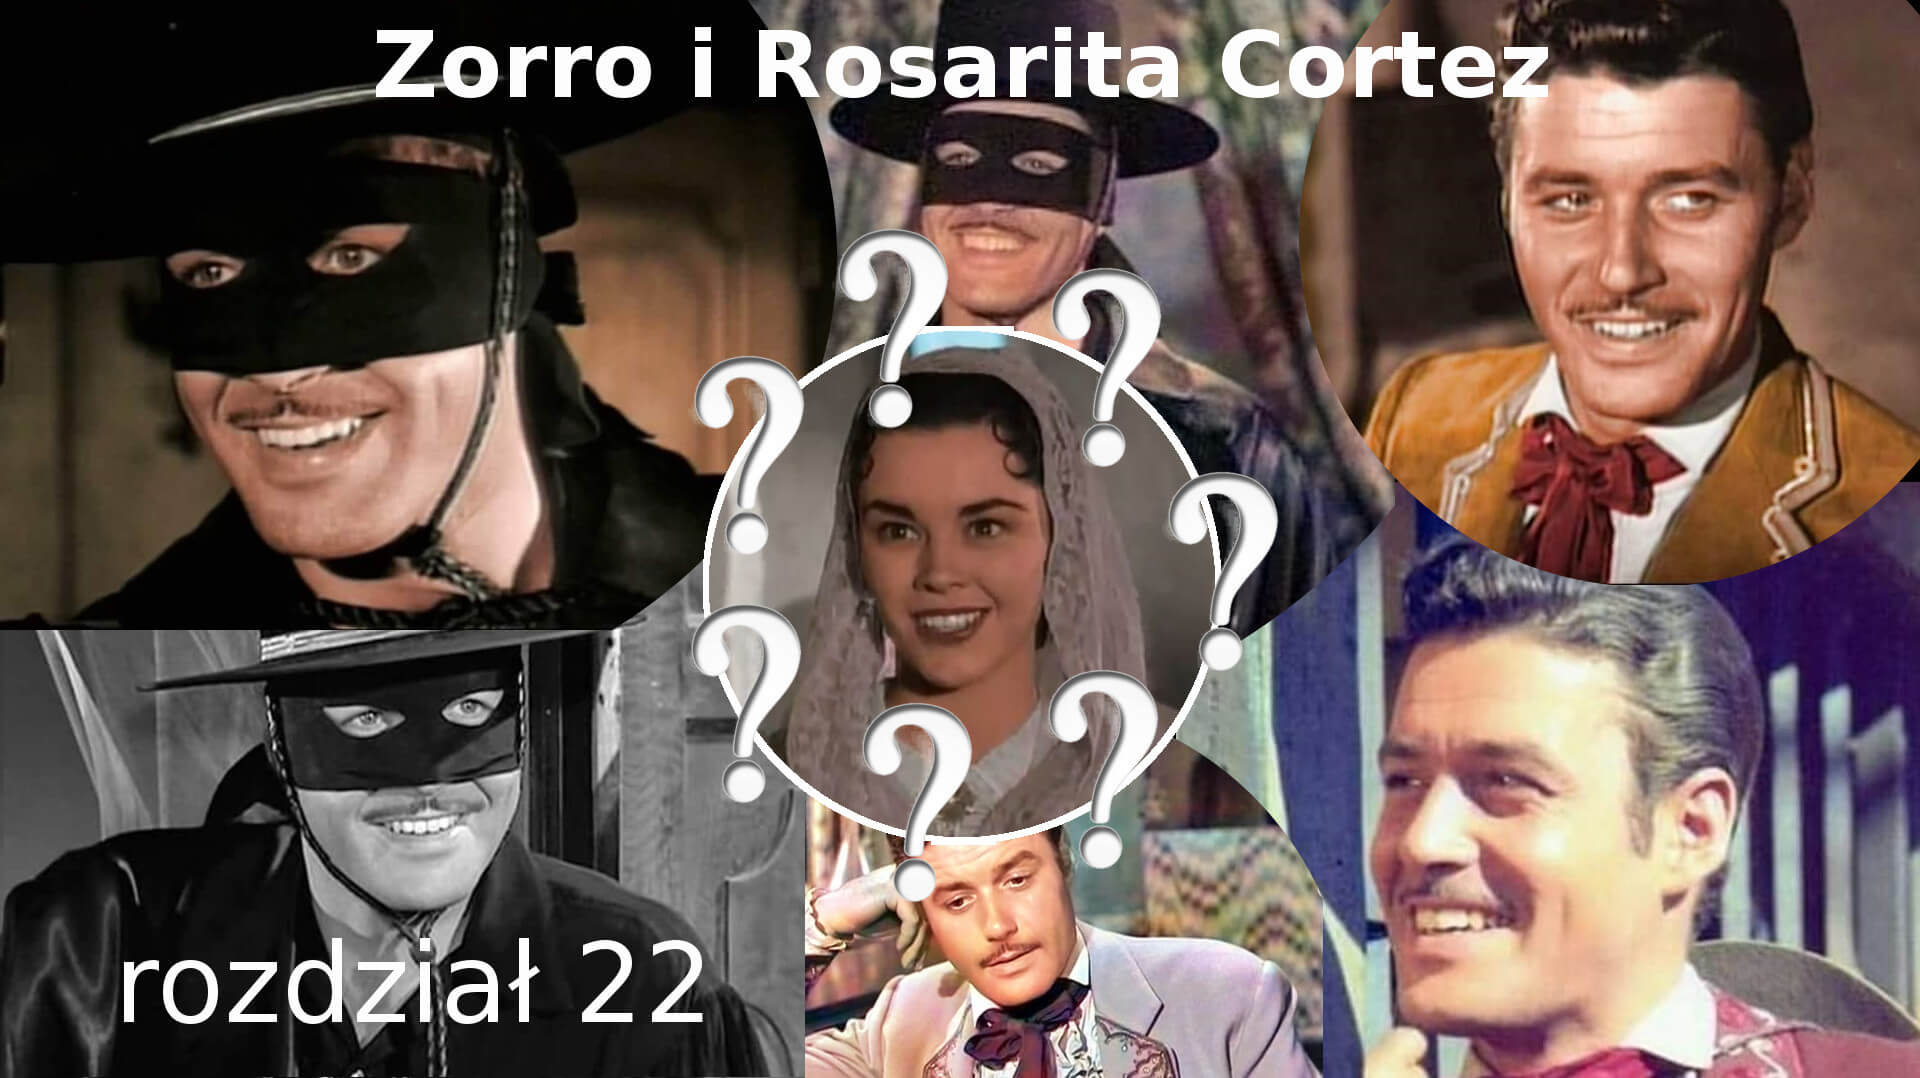 Zorro i Rosarita Cortez rozdział 22 Zorro fanfiction